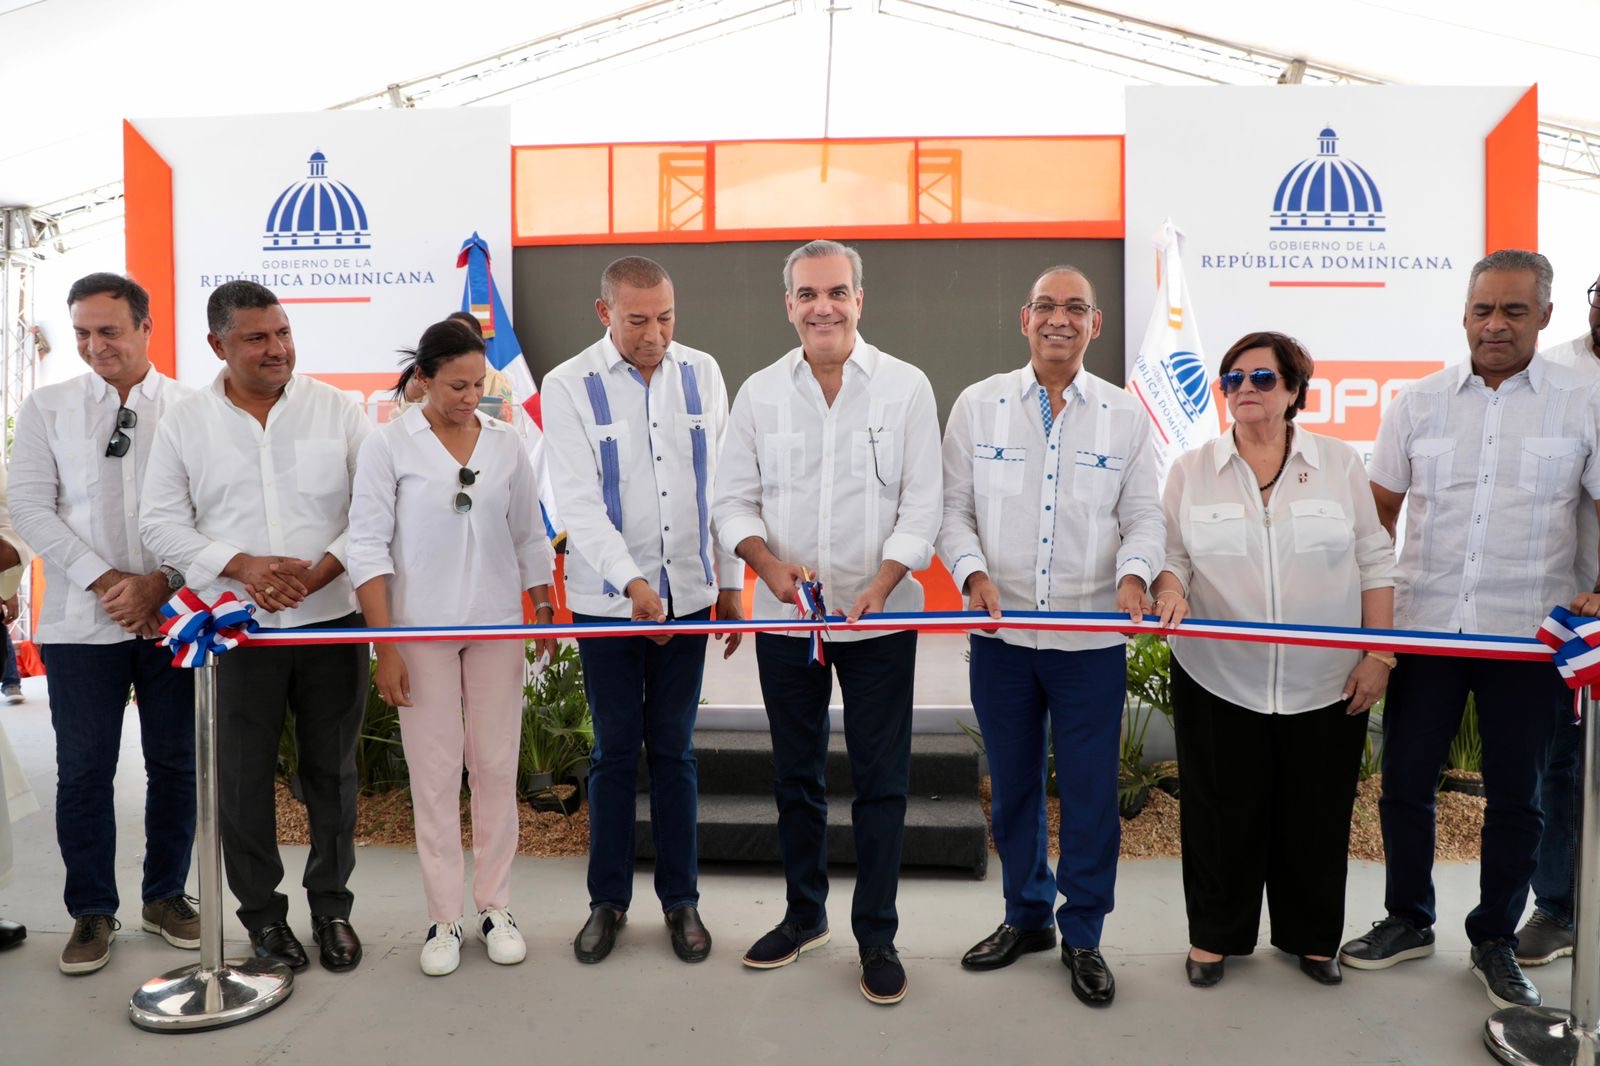 Presidente Abinader reinicia programa de inauguraciones en todo el país; este domingo entrega reconstrucción de carretera La Candelaria-Bejucal- Magarín, que impacta a más de 175,000 personas de Hato Mayor y El Seibo